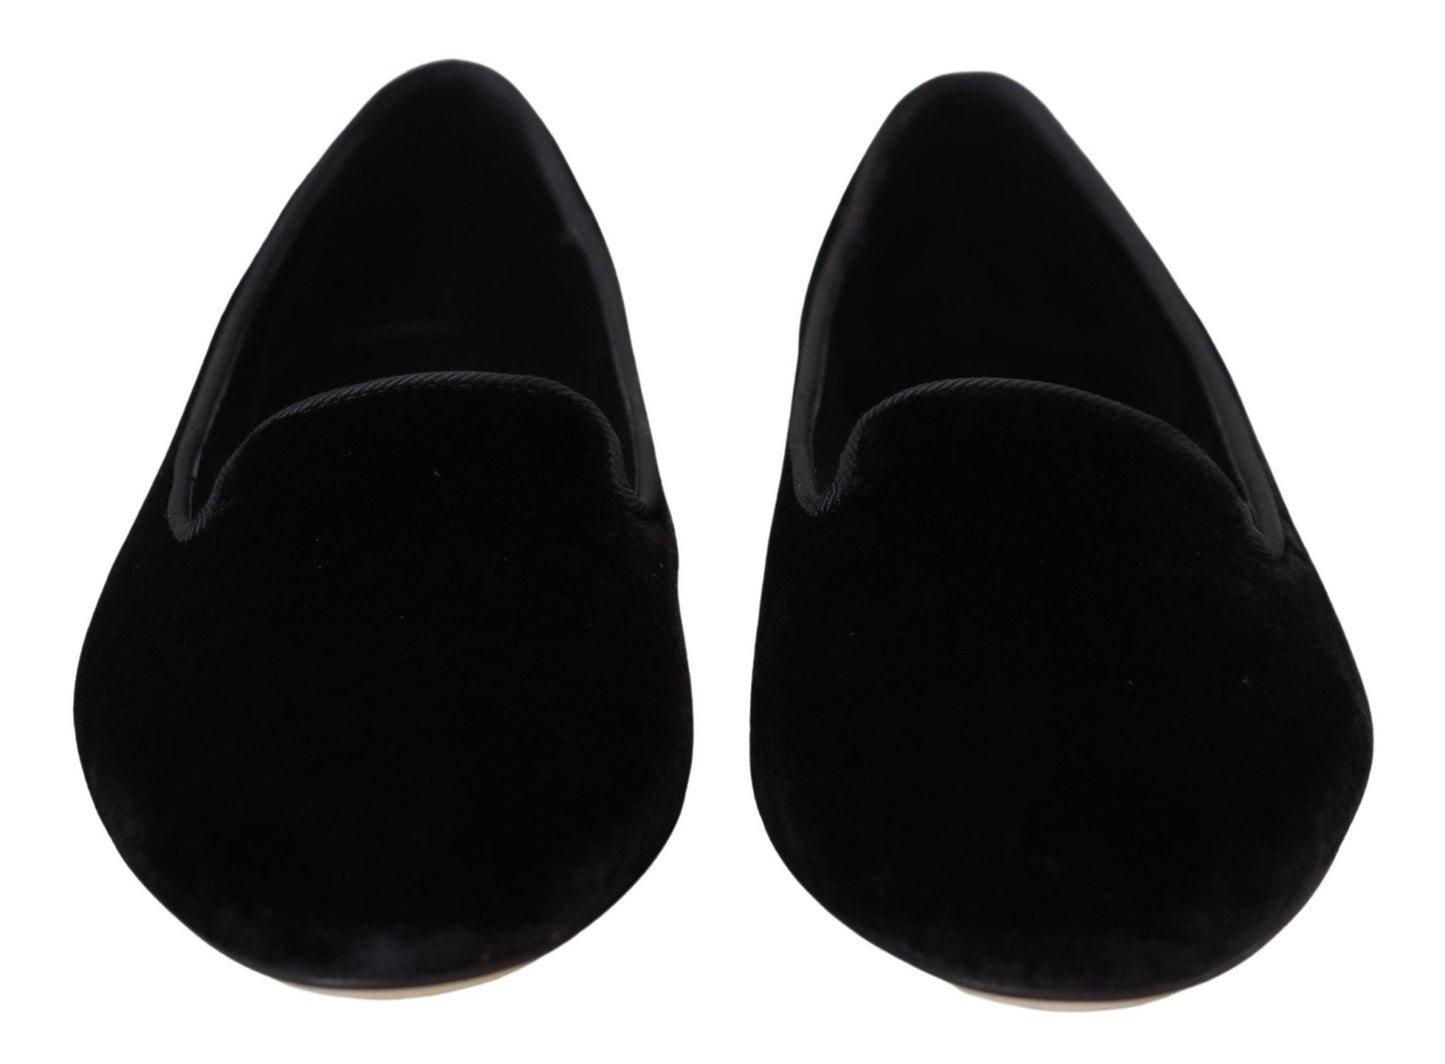 Dolce & Gabbana Black Velvet Slip Ons Loafers Flats Shoes